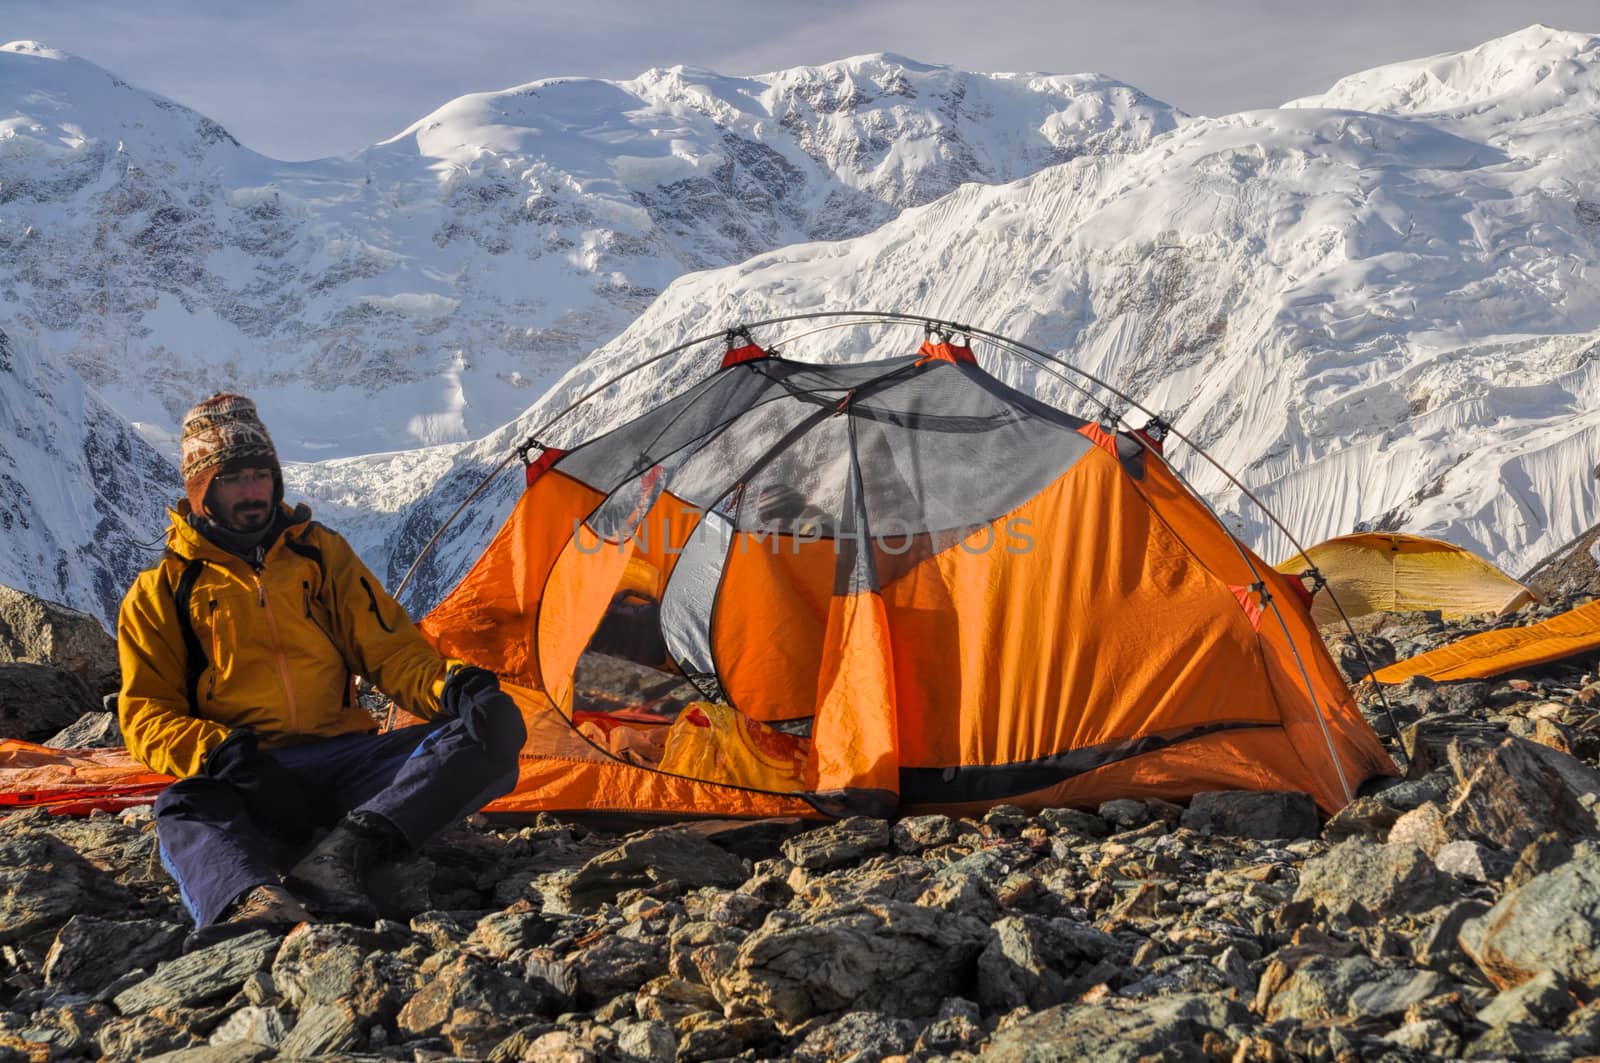 Adventurous hiker camping near Engilchek glacier in scenic Tian Shan mountain range in Kyrgyzstan